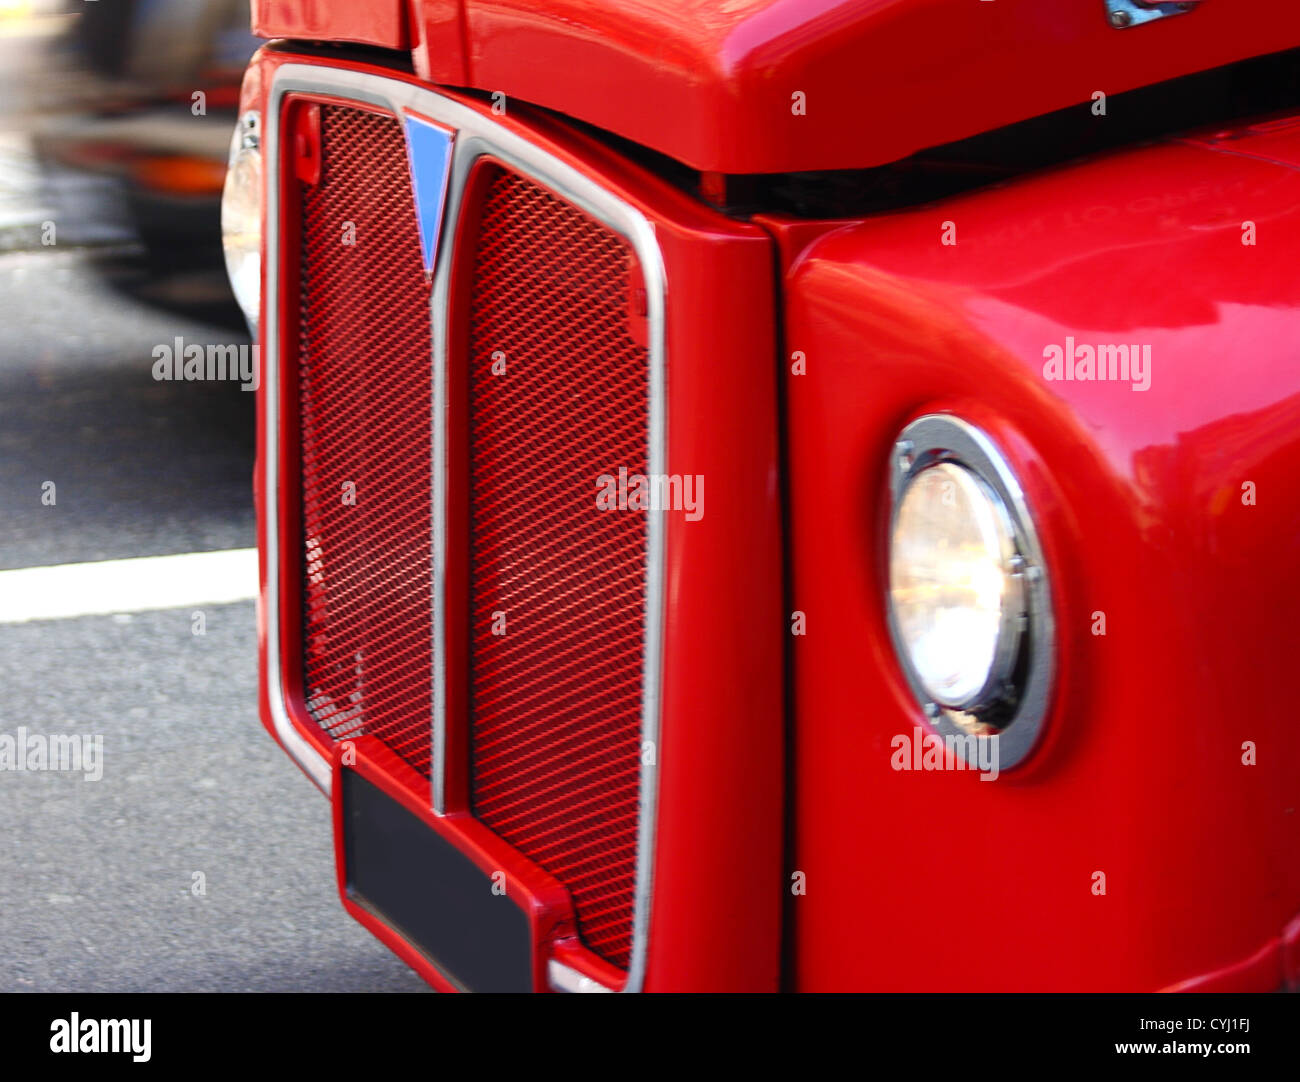 Visiter Londres avec un vieux bus à impériale rouge Banque D'Images